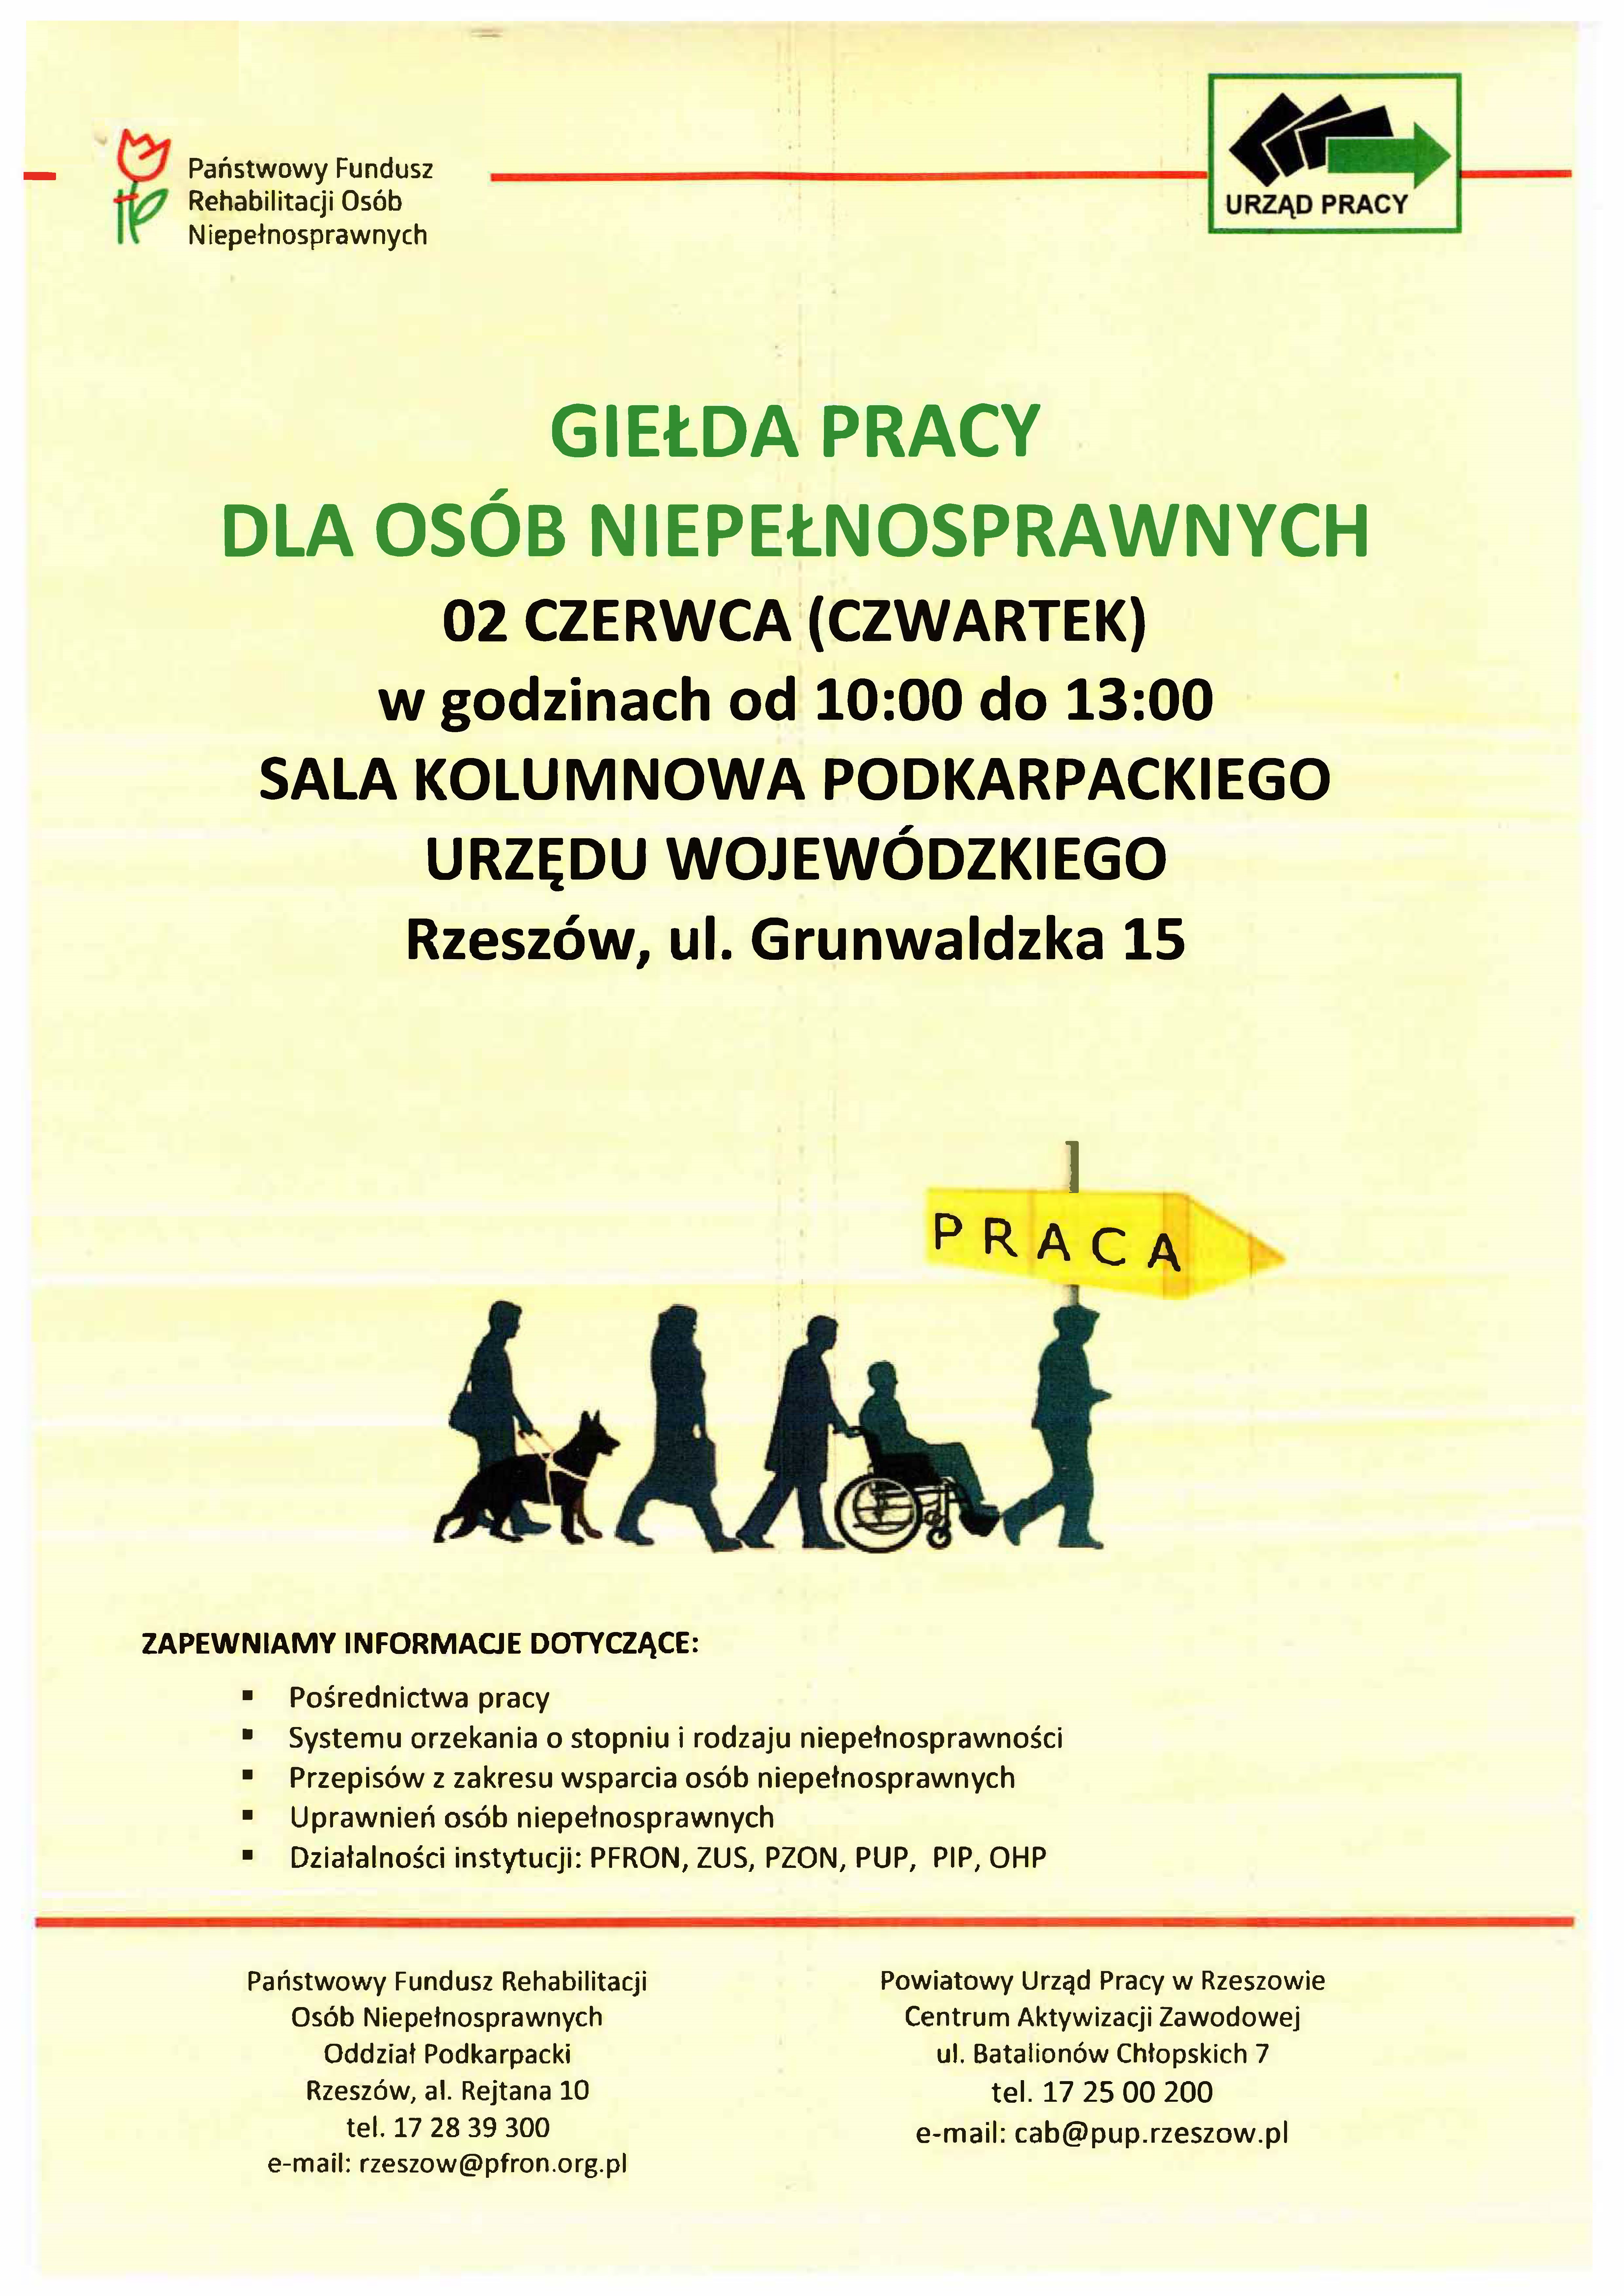 plakat informujący o giełdzie pracy dla osób niepełnosprawnych w dniu 2 czerwca 2022 roku od godziny 10 do 13 w sali kolumnowej podkarpackiego urzędu wojewódzkiego w Rzeszowie